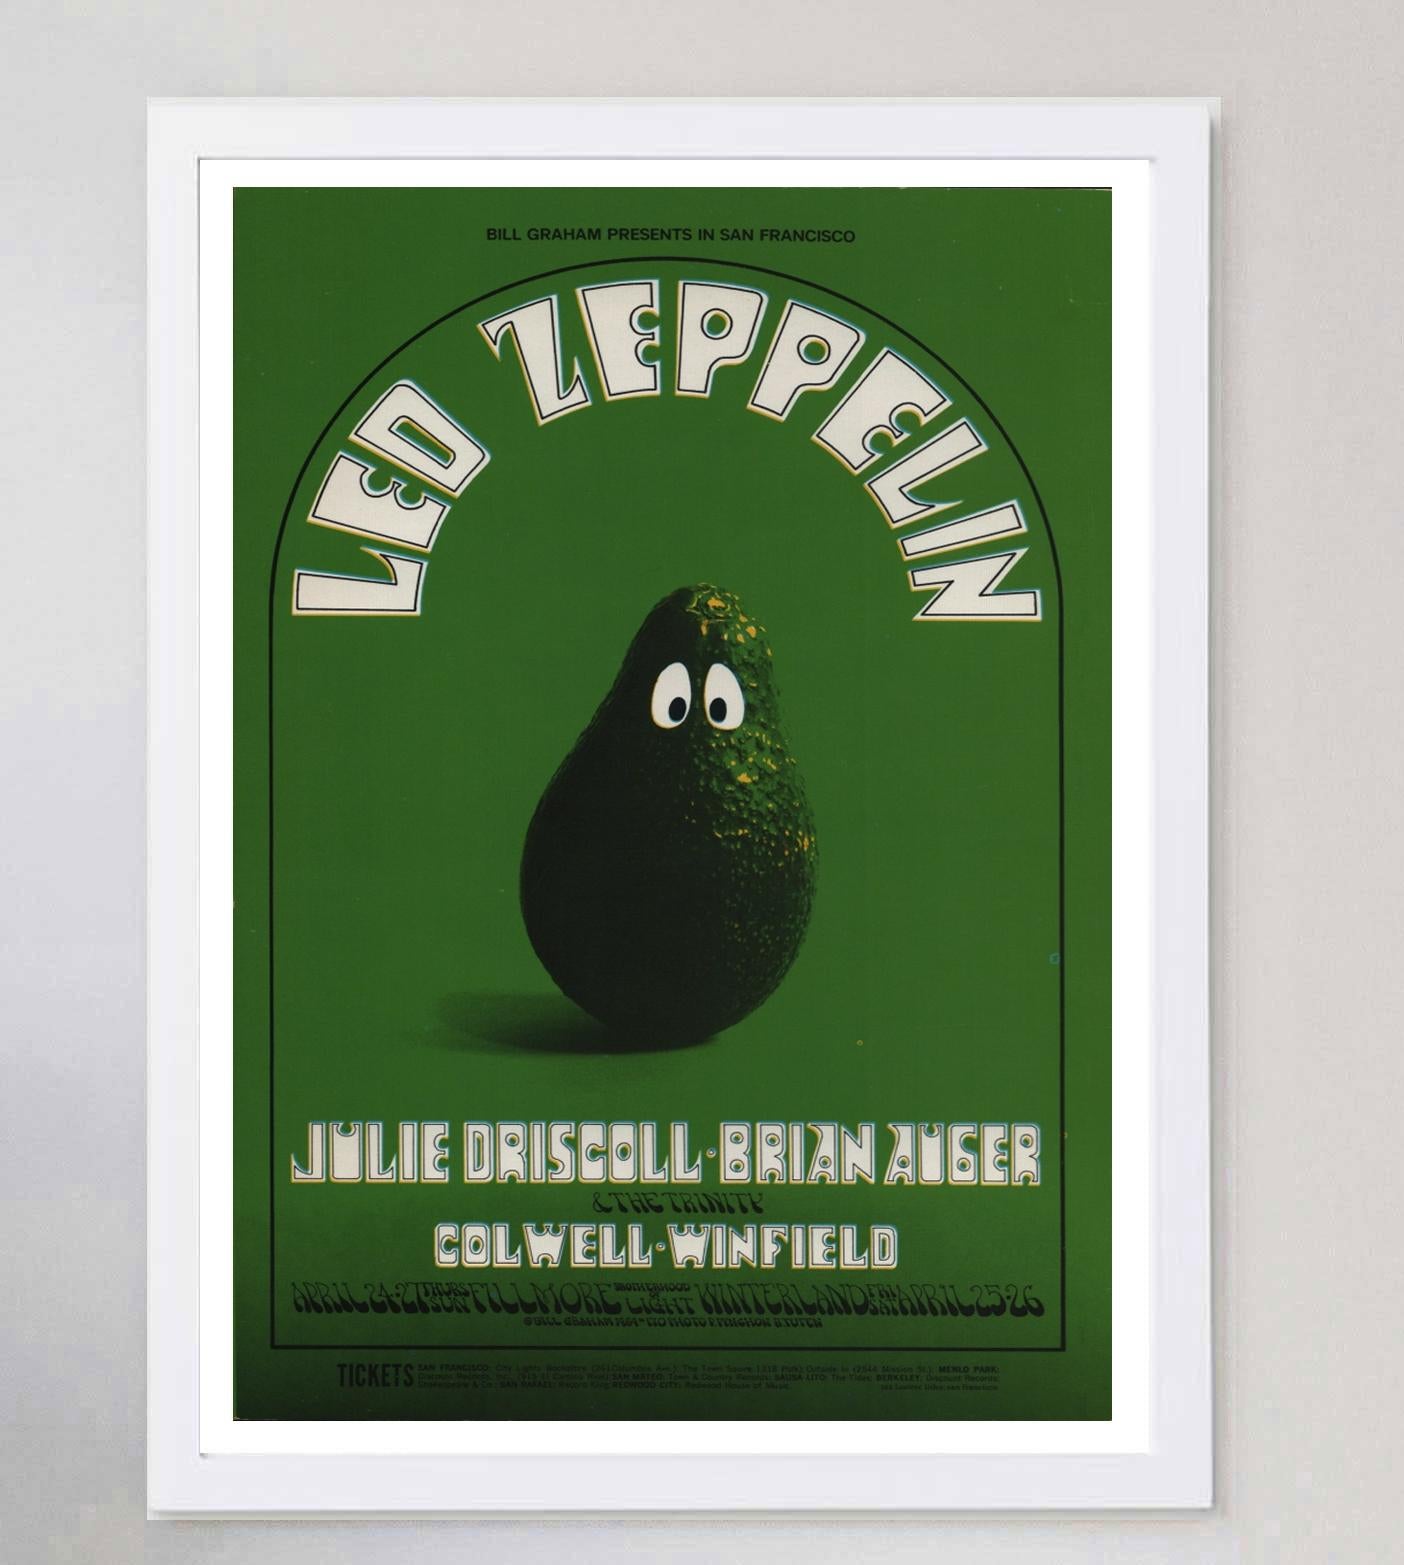 American 1969 Led Zeppelin - Fillmore Original Vintage Poster For Sale